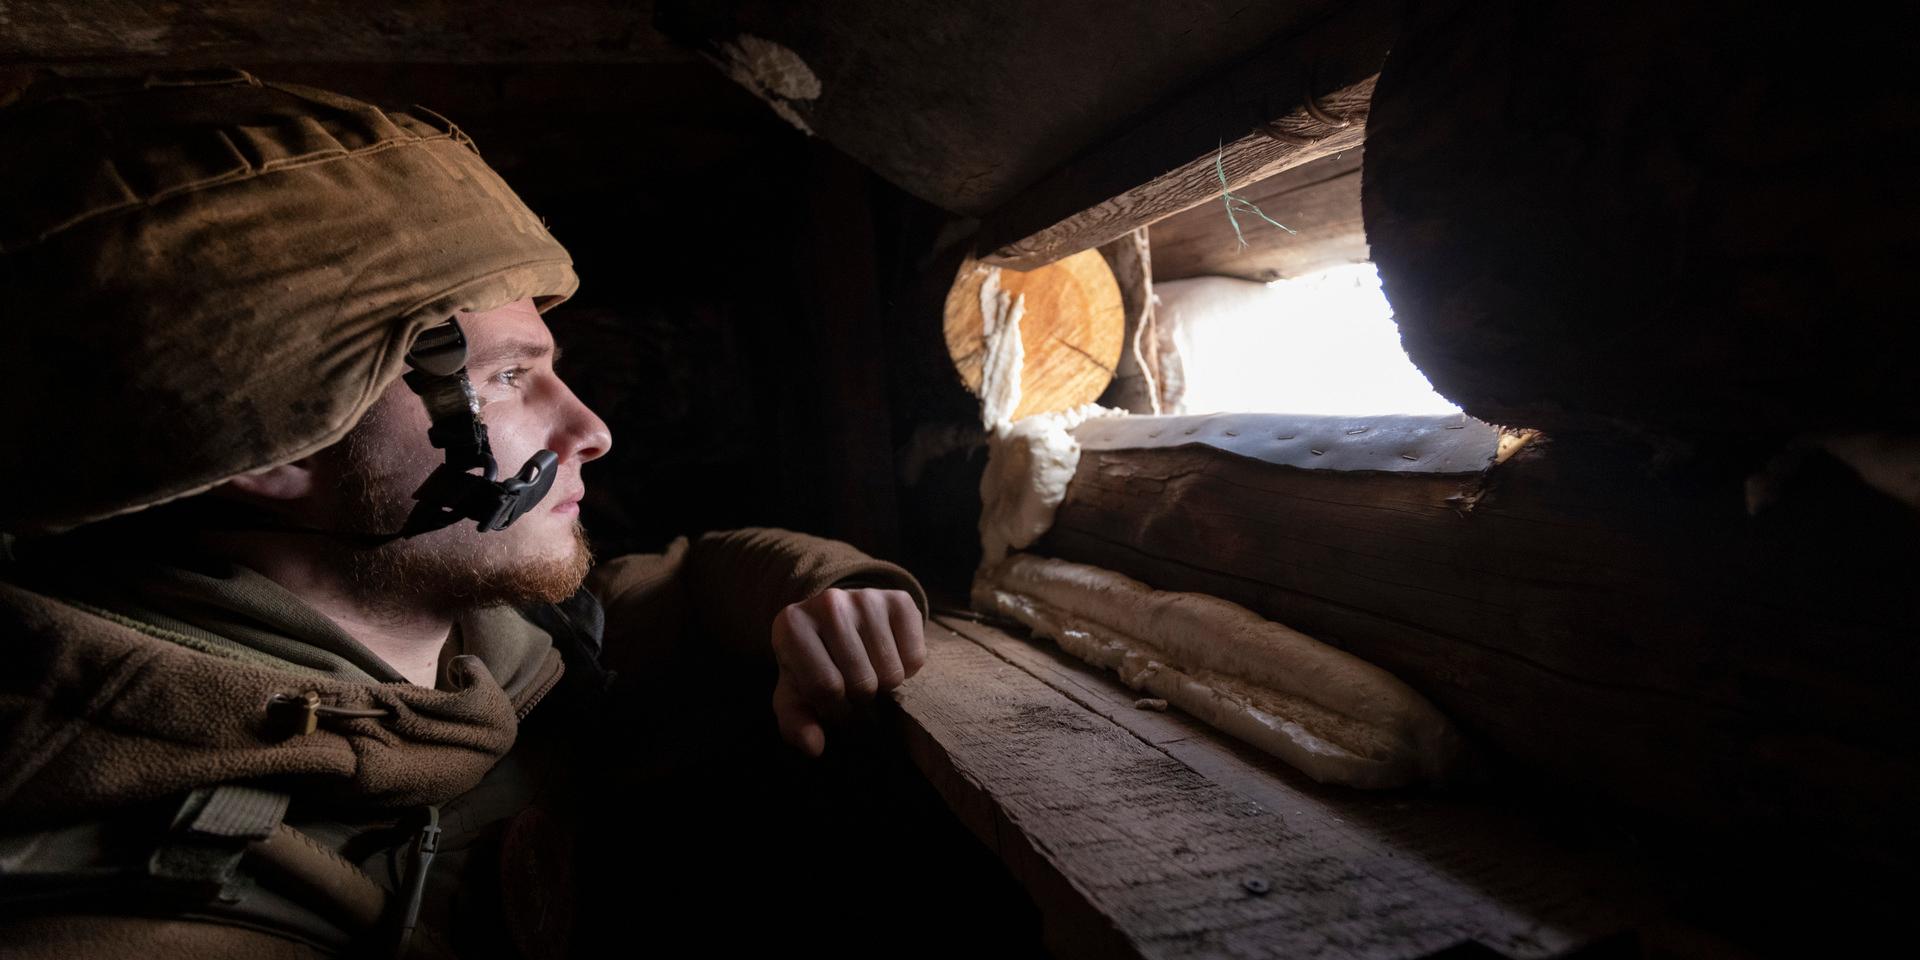 En ukrainsk soldat spanar genom värnet vid fronten mot de ryskstödda separatisterna i Donetsk-regionen i östra Ukraina. Inför en ny befarad rysk invasion och krissamtal mellan Ryssland, USA och Nato råder en spänt väntan efter åtta års fruktlöst krig med över 13 000 döda.